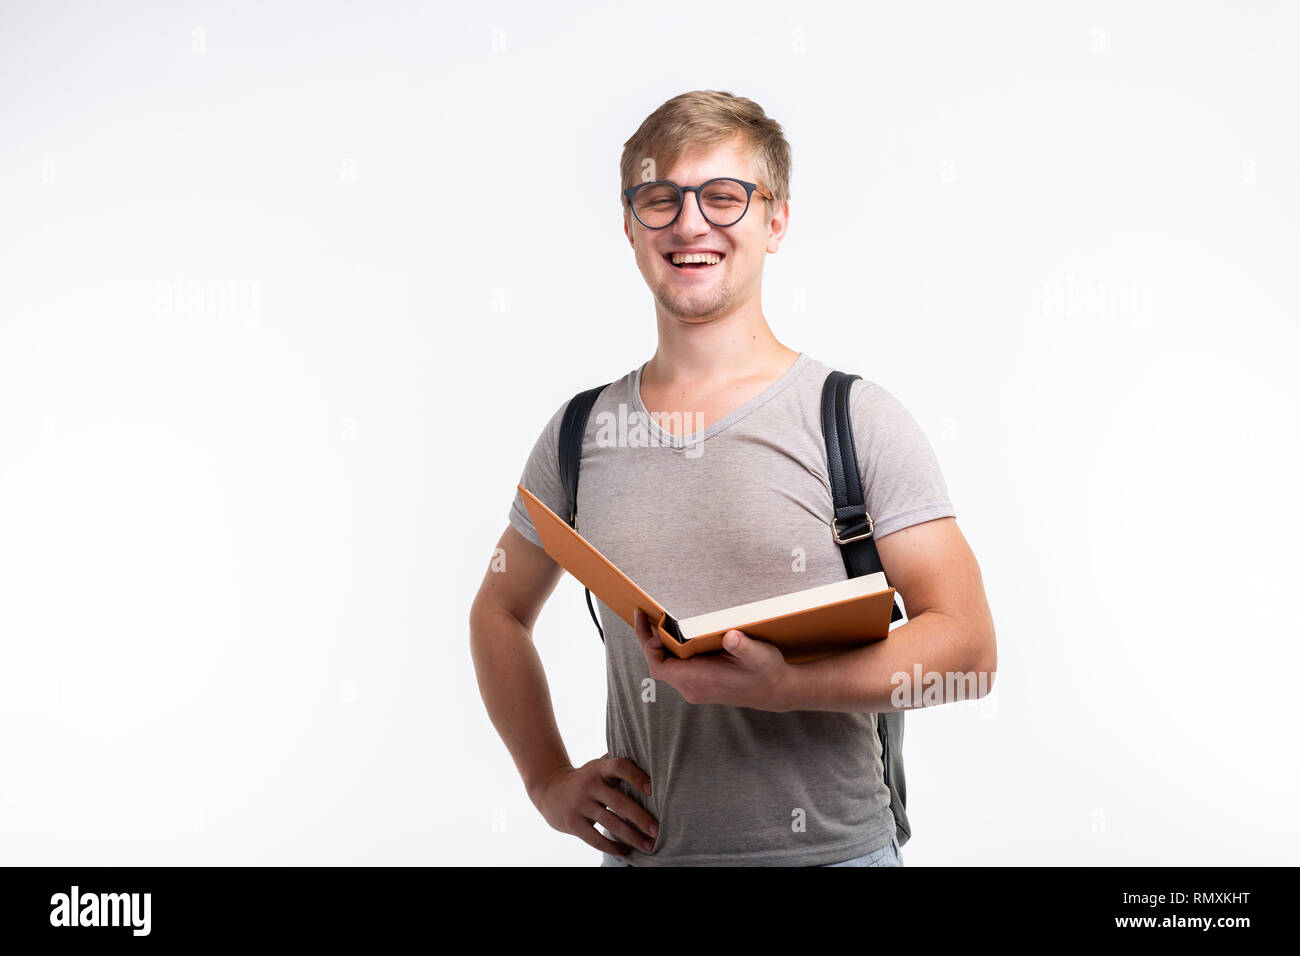 Springboard lov Høre fra Blond student man nerd glasses hi-res stock photography and images - Alamy